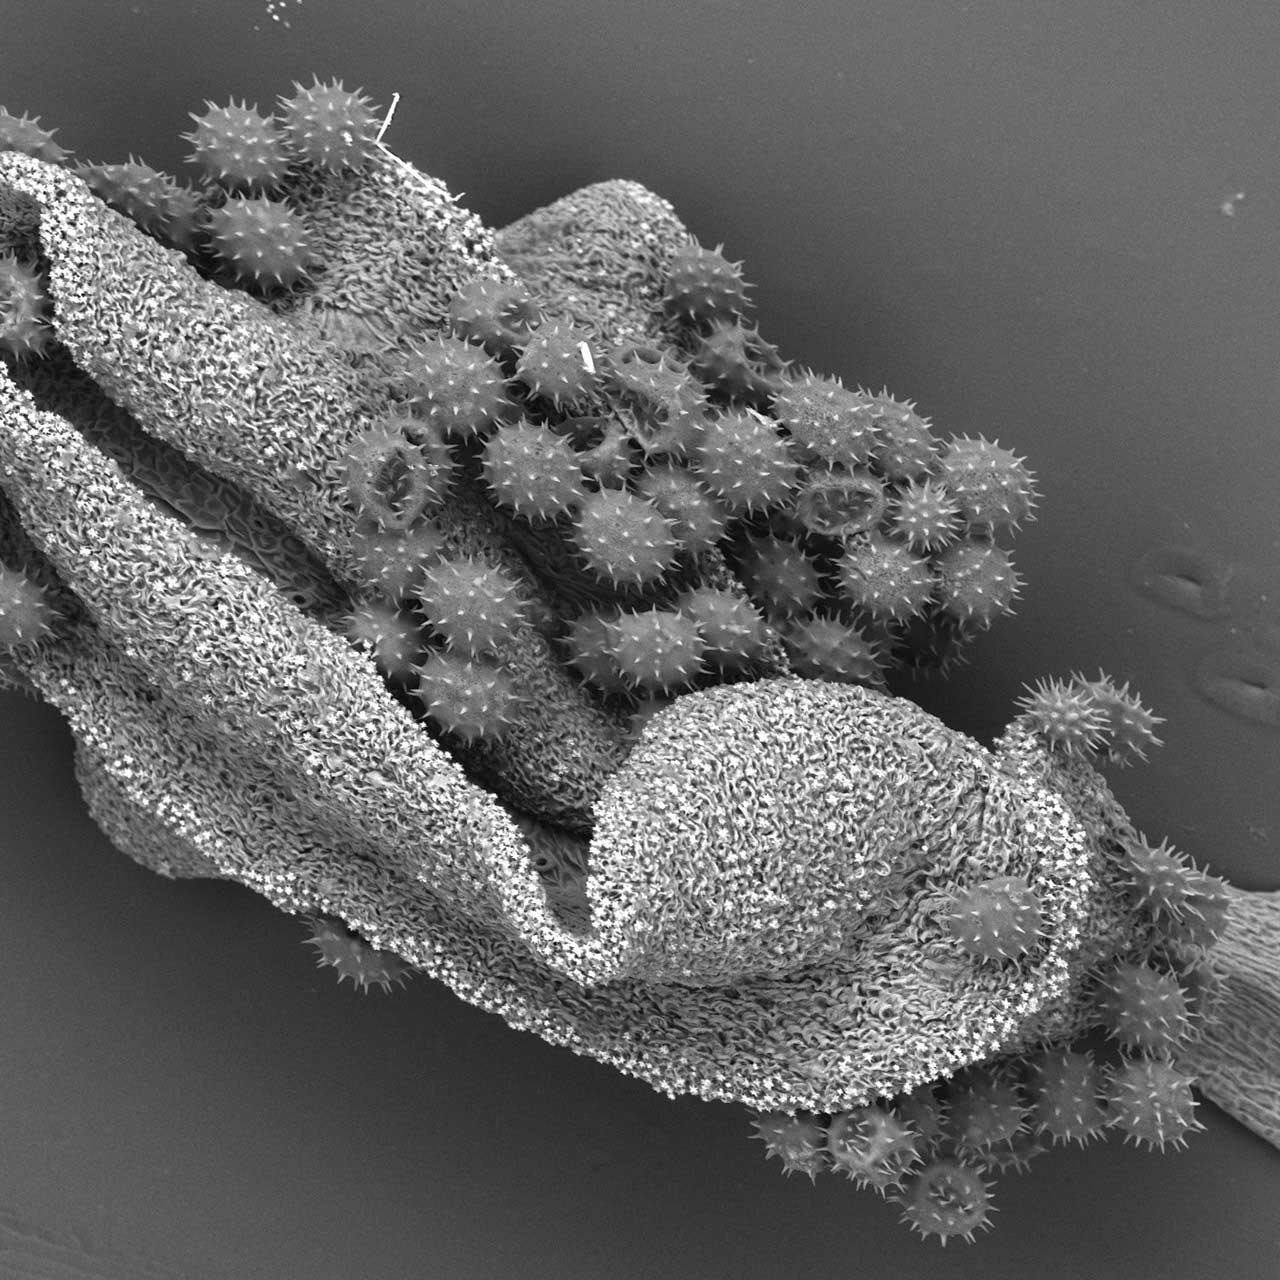 An einem Hibiskusblatt haftender Pollen, abgebildet mit Rasterelektronenmikroskop im druckvariablen Modus.